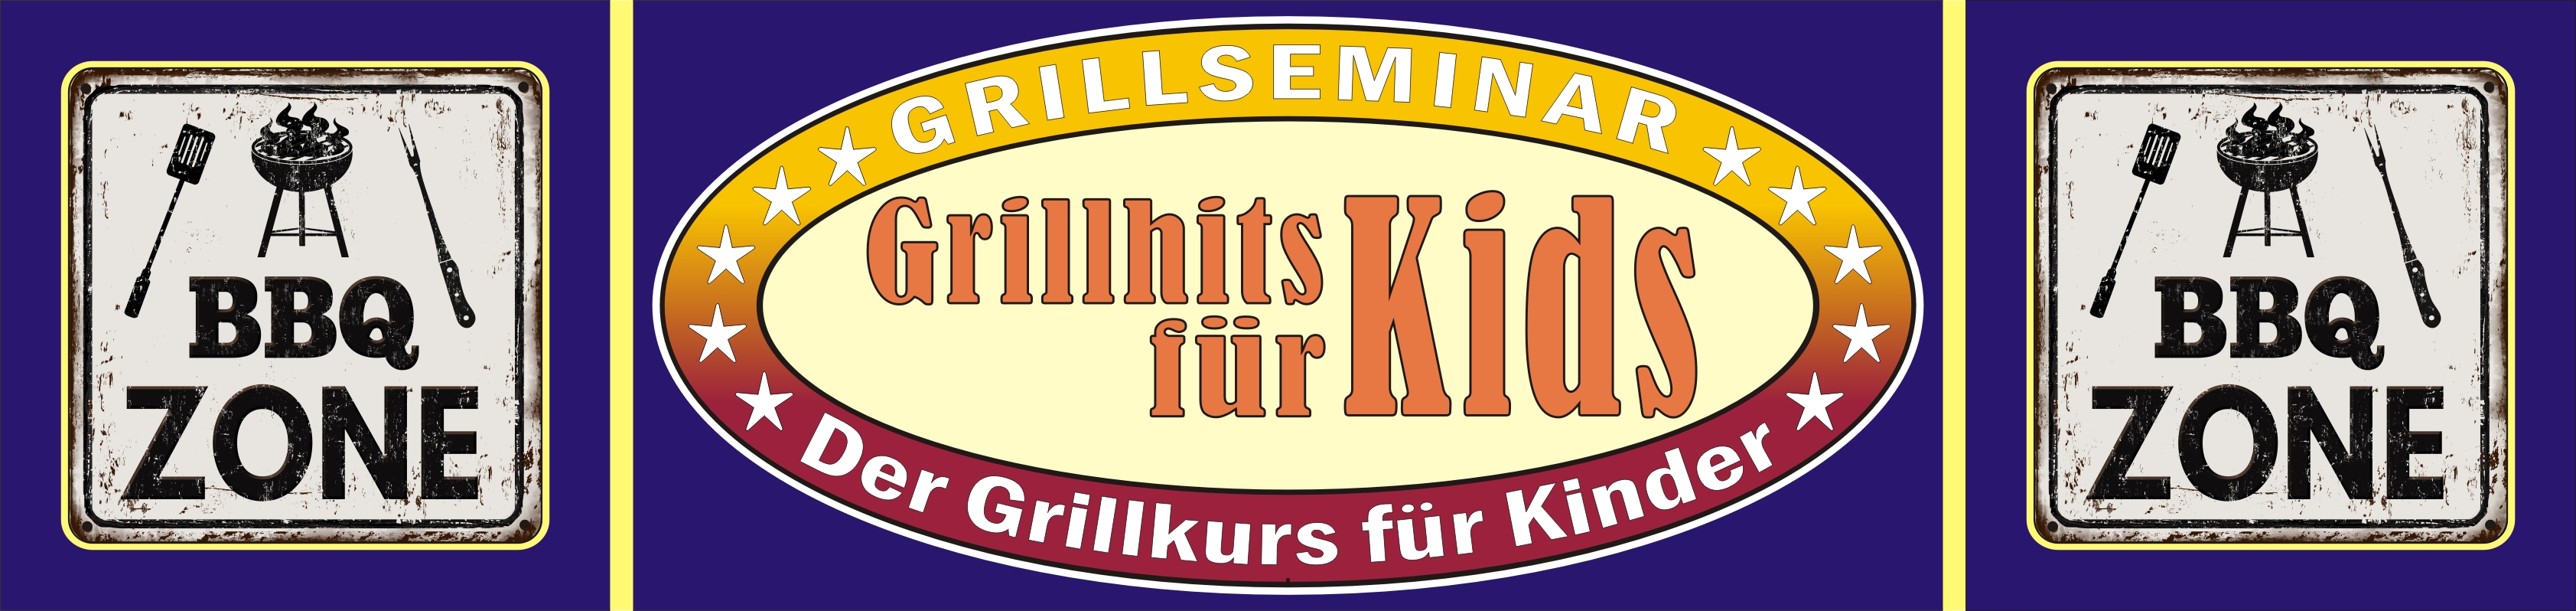 Grillkurs für Kinder | Grillhits für Kids | Kochkurs in Osnabrück, Bielefeld, Gütersloh, Paderborn...